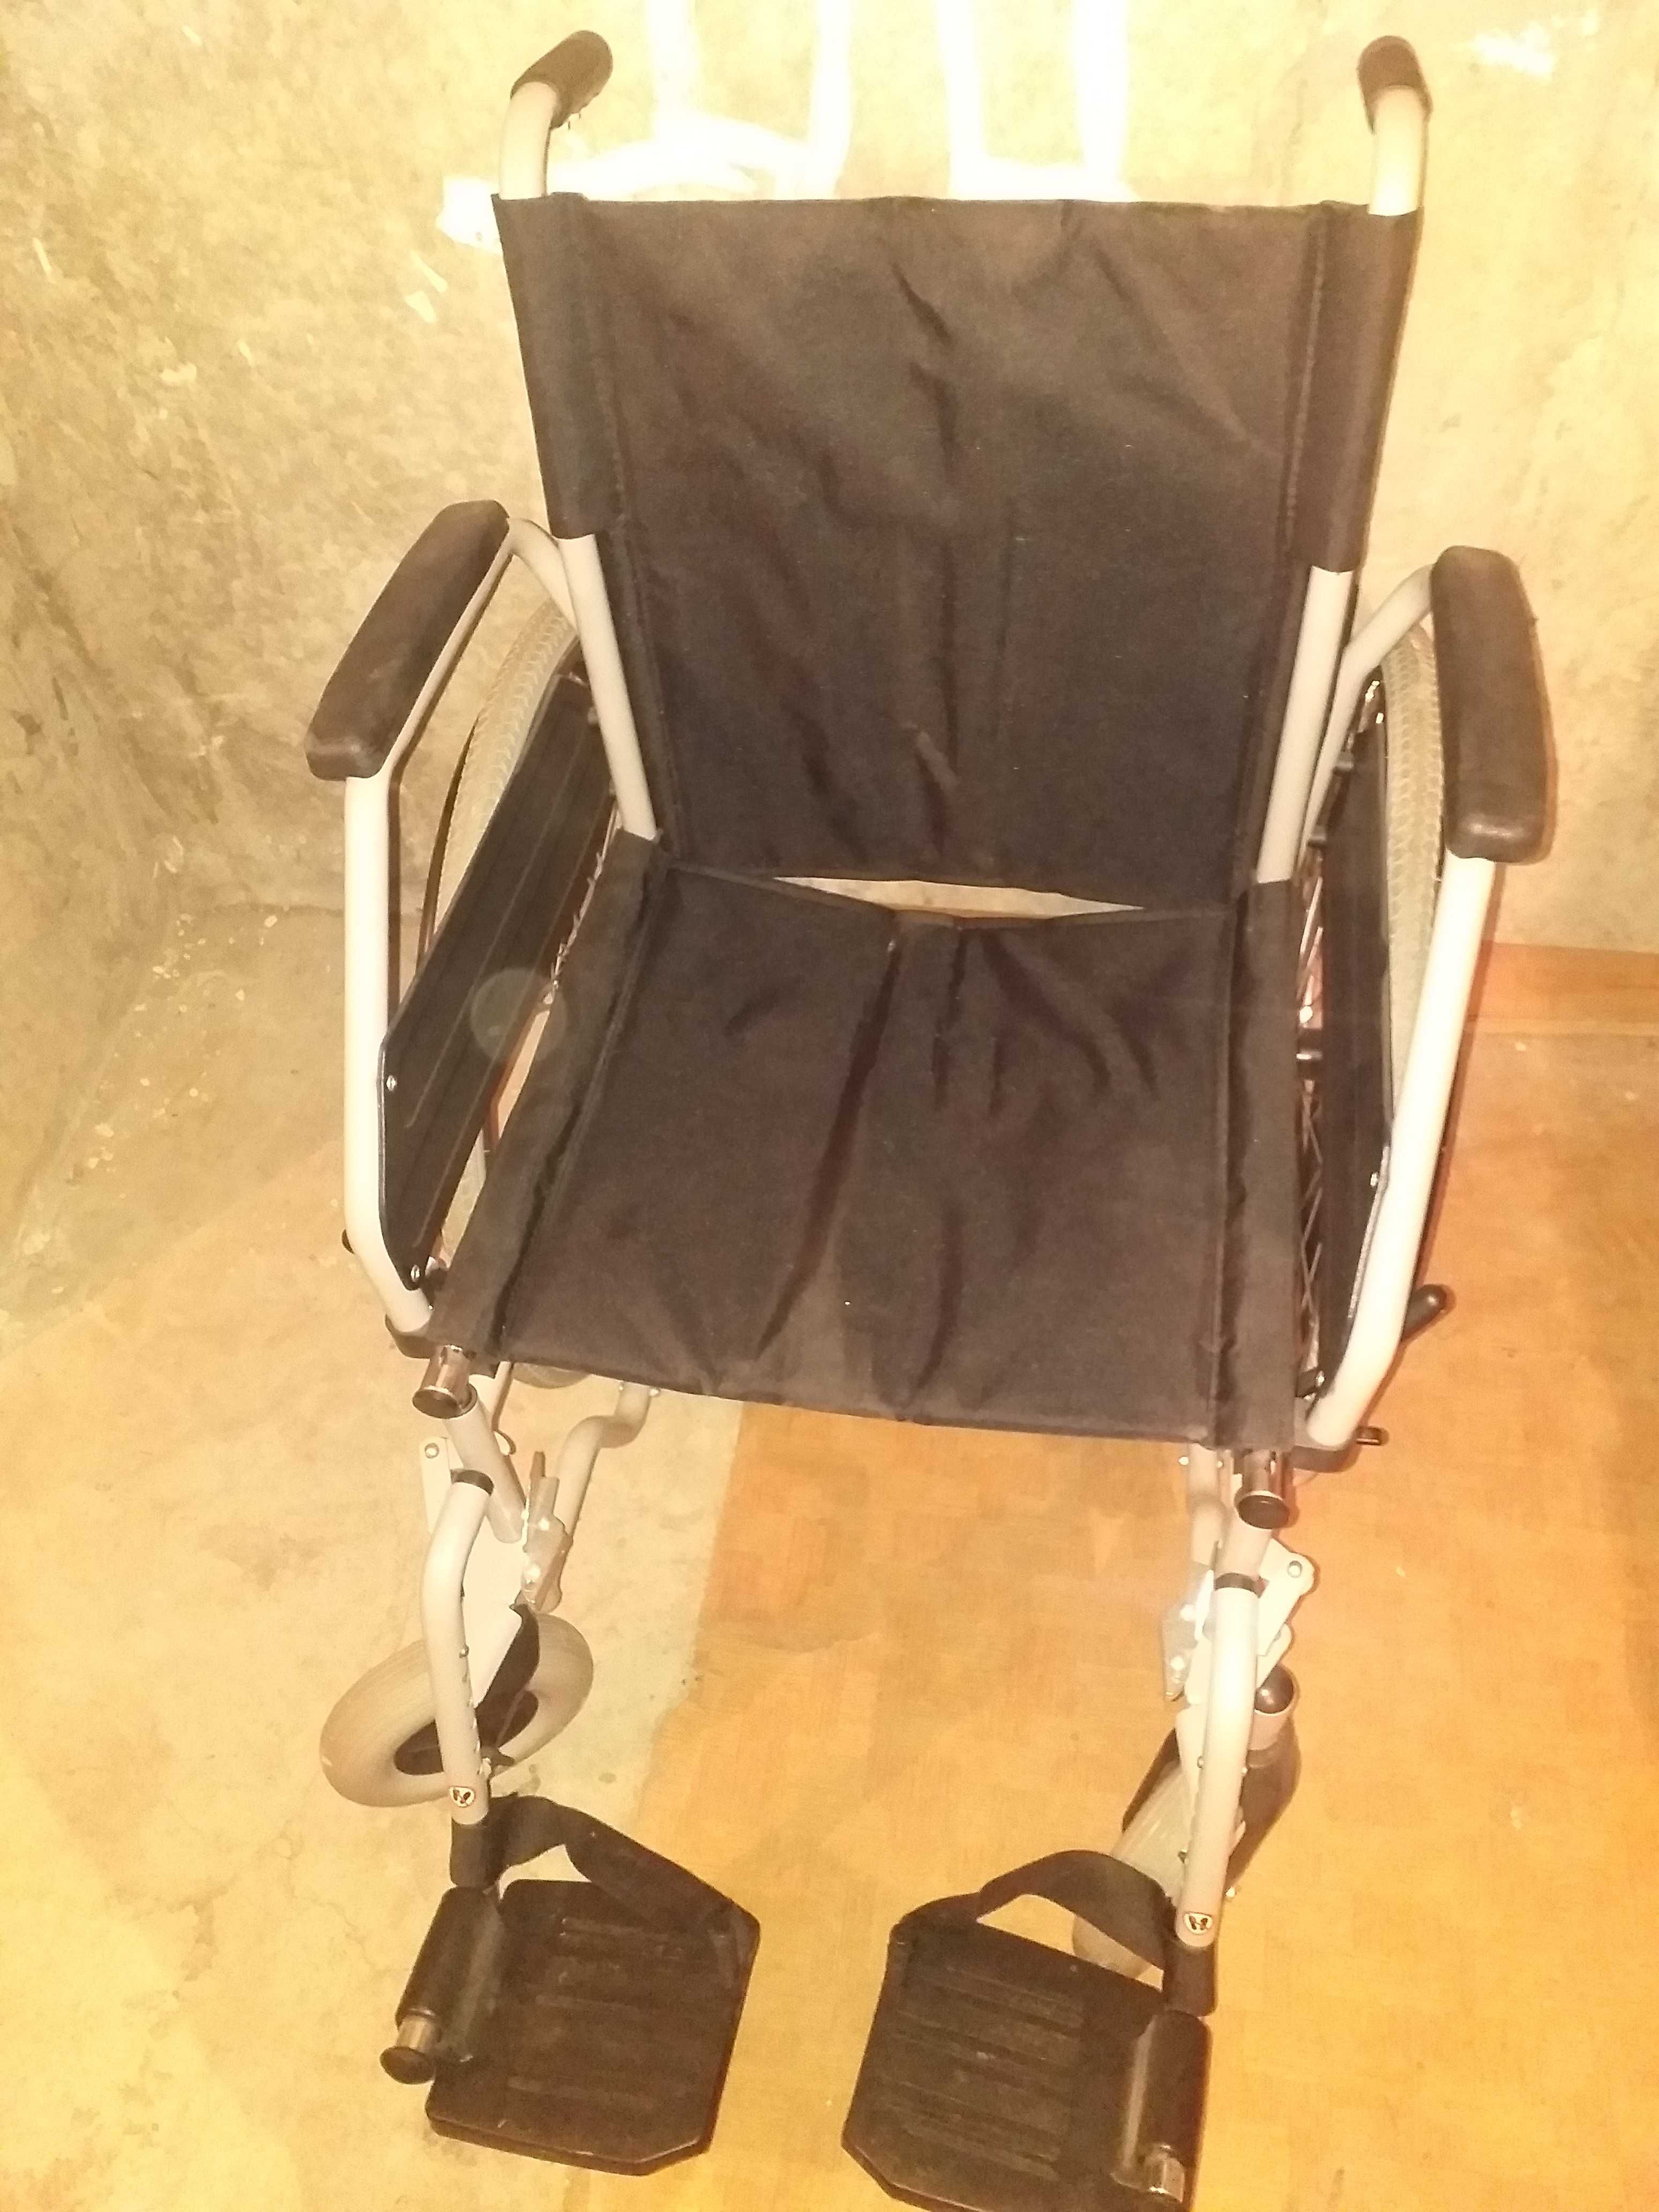 Wózek inwalidzki marki Vitea Care